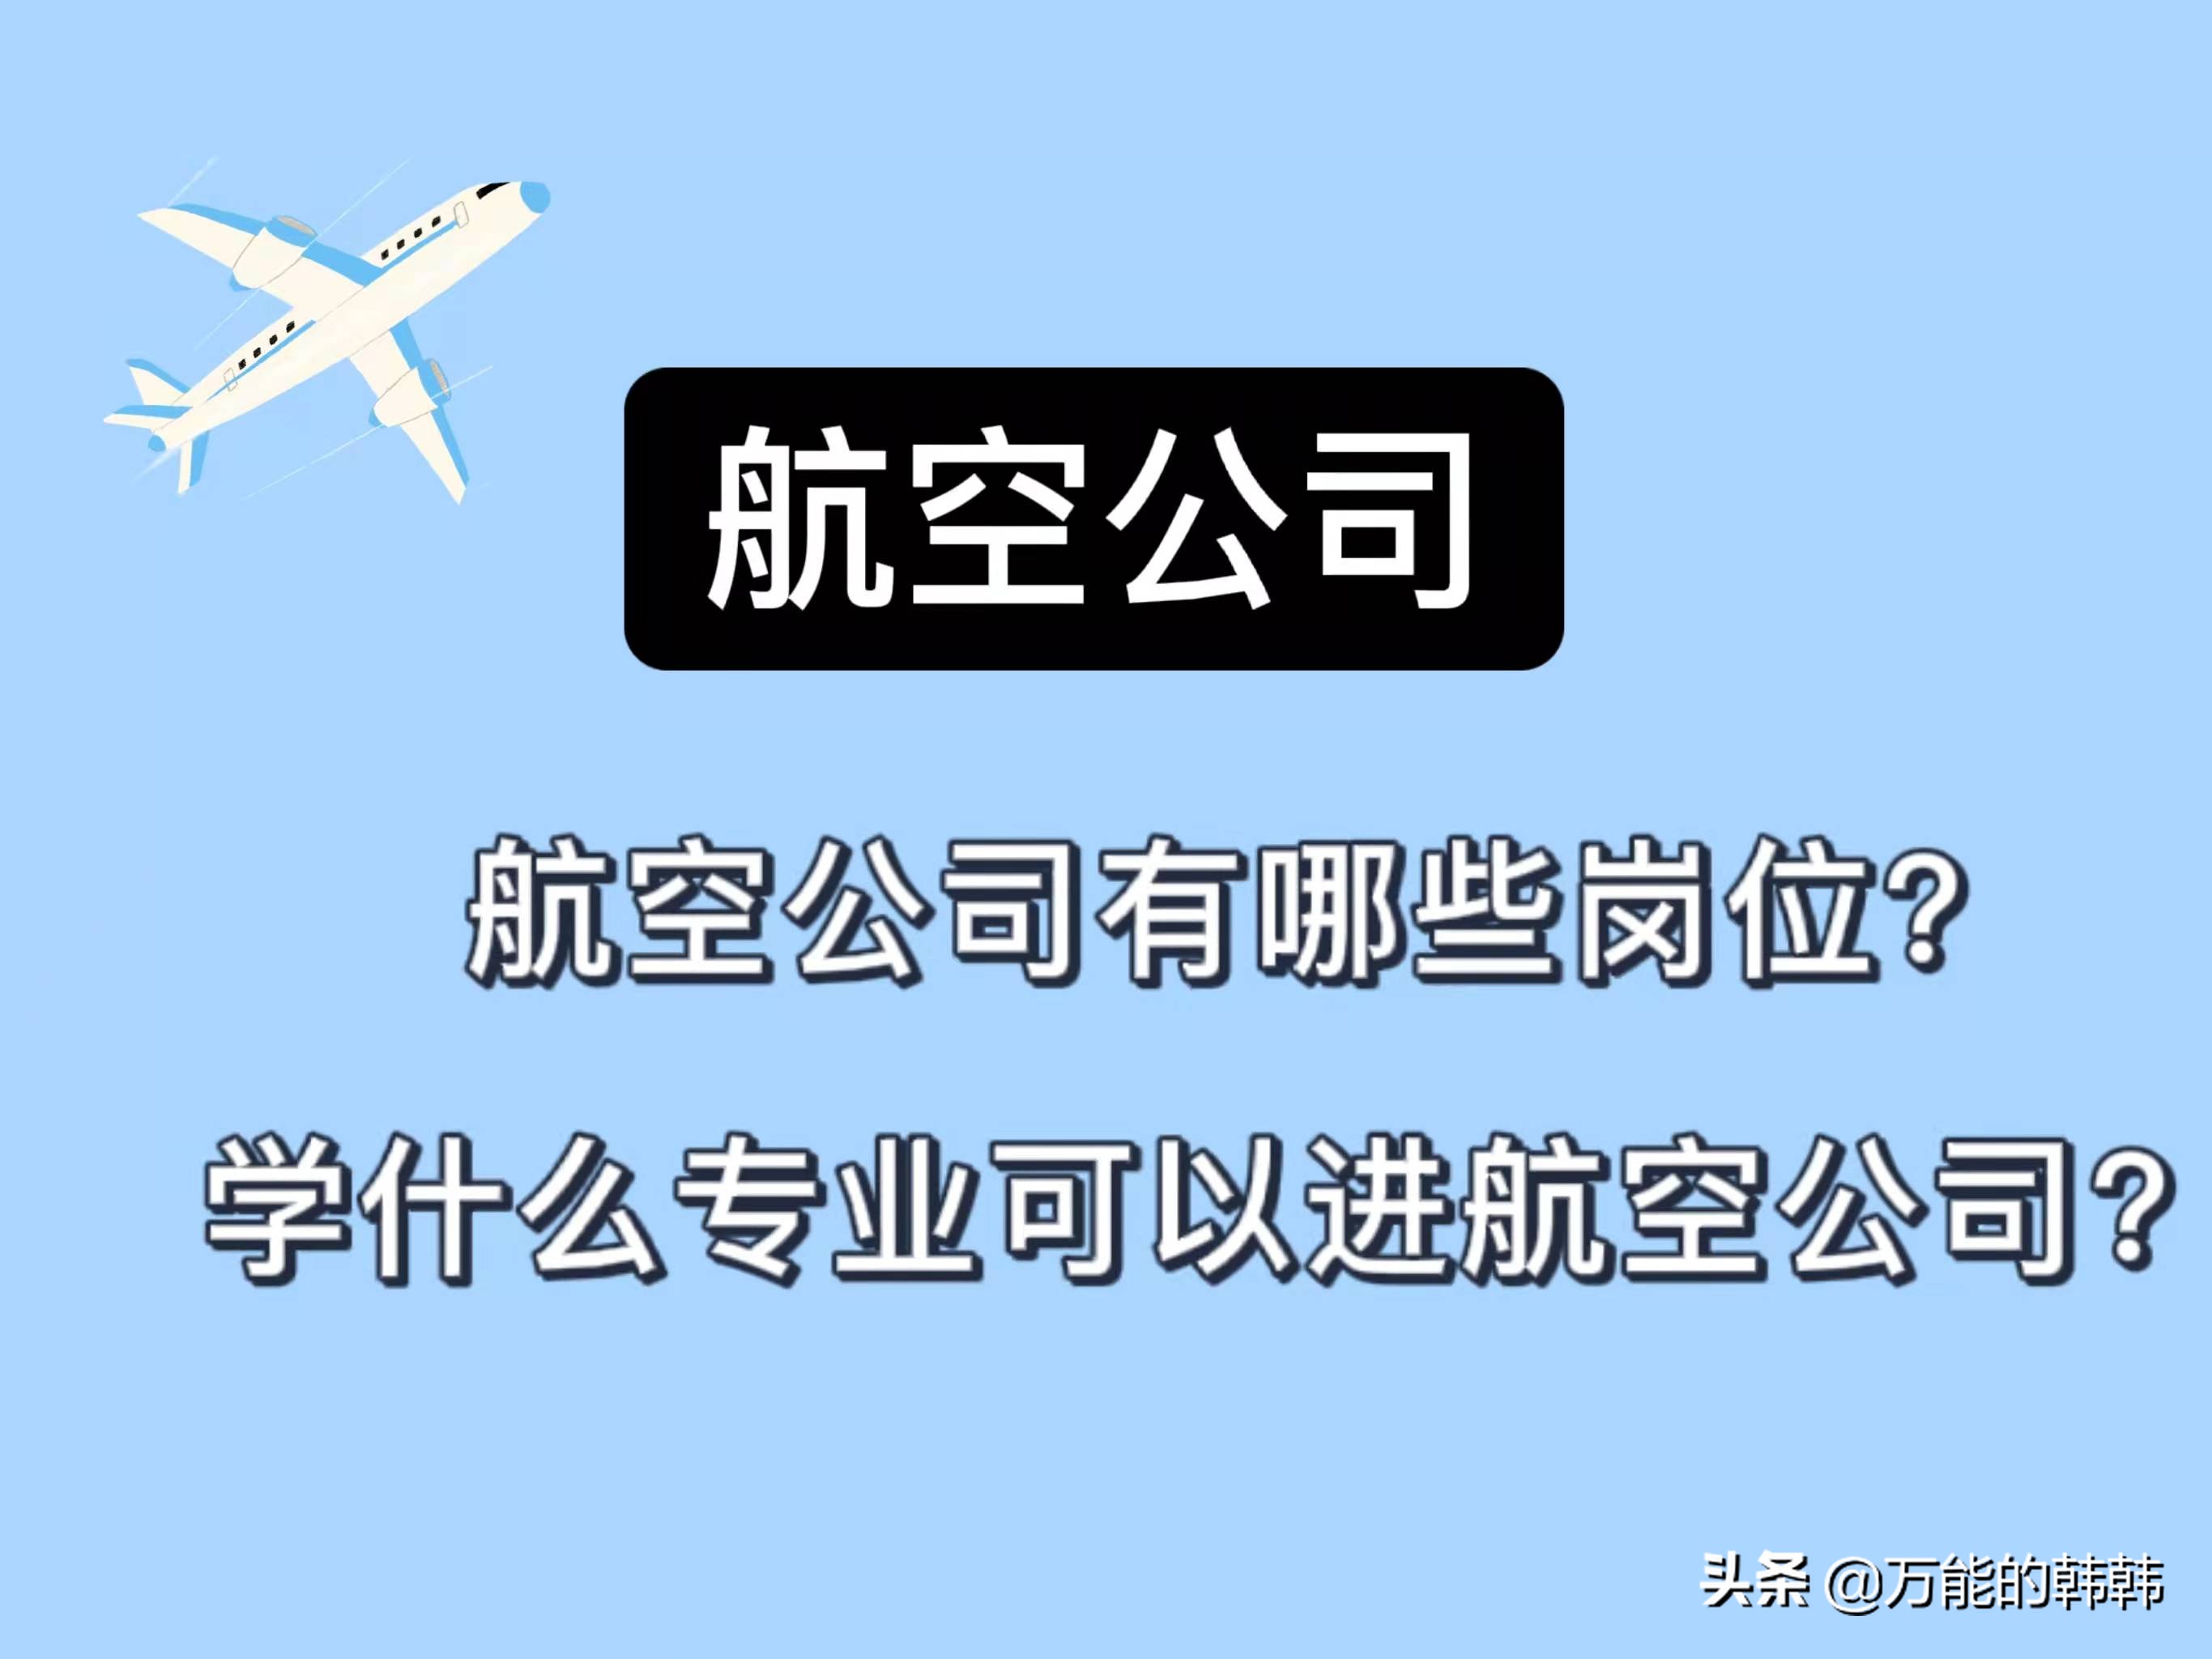 民航局招聘(航空公司具体有哪些常见的岗位)-深圳富士康招聘